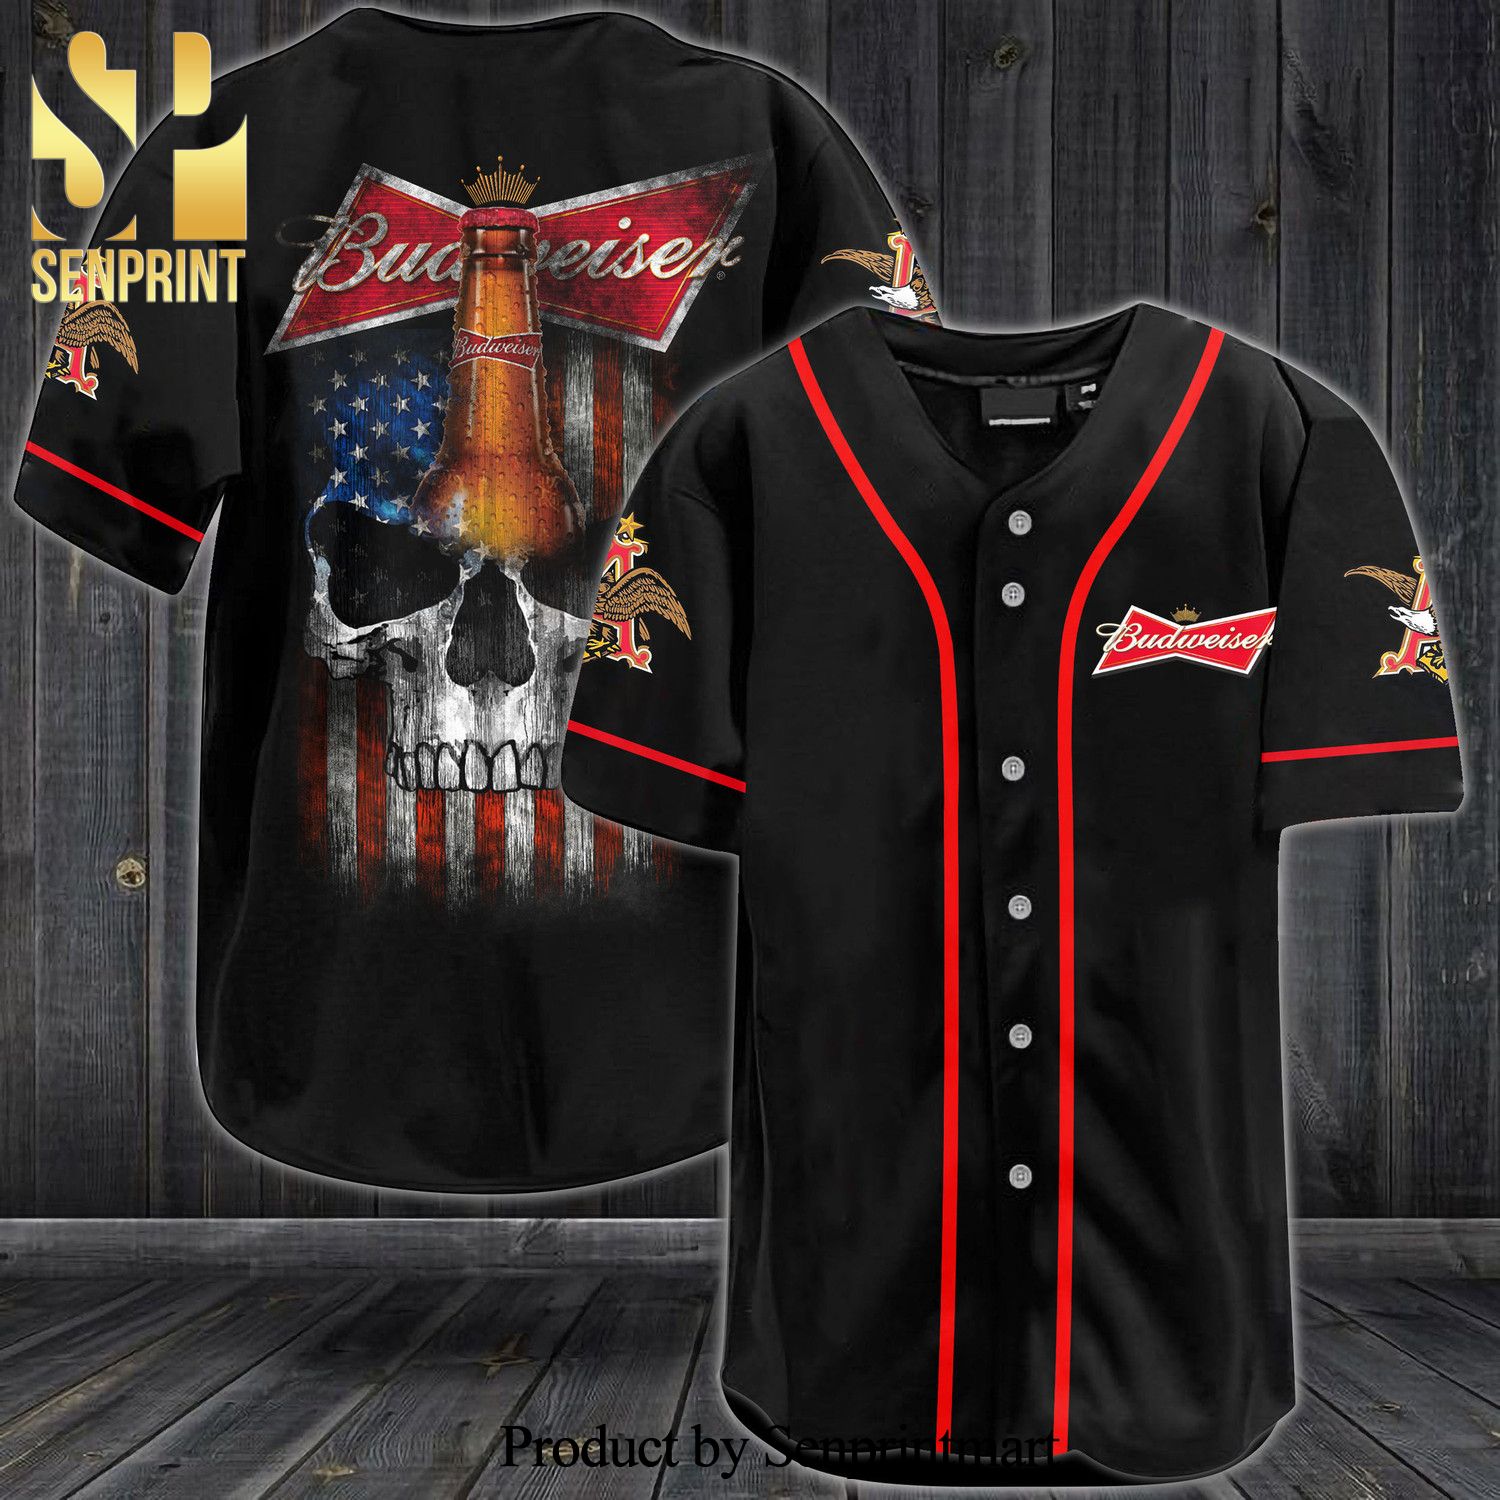 Budweiser USA Flag Skull All Over Print Unisex Baseball Jersey – Black